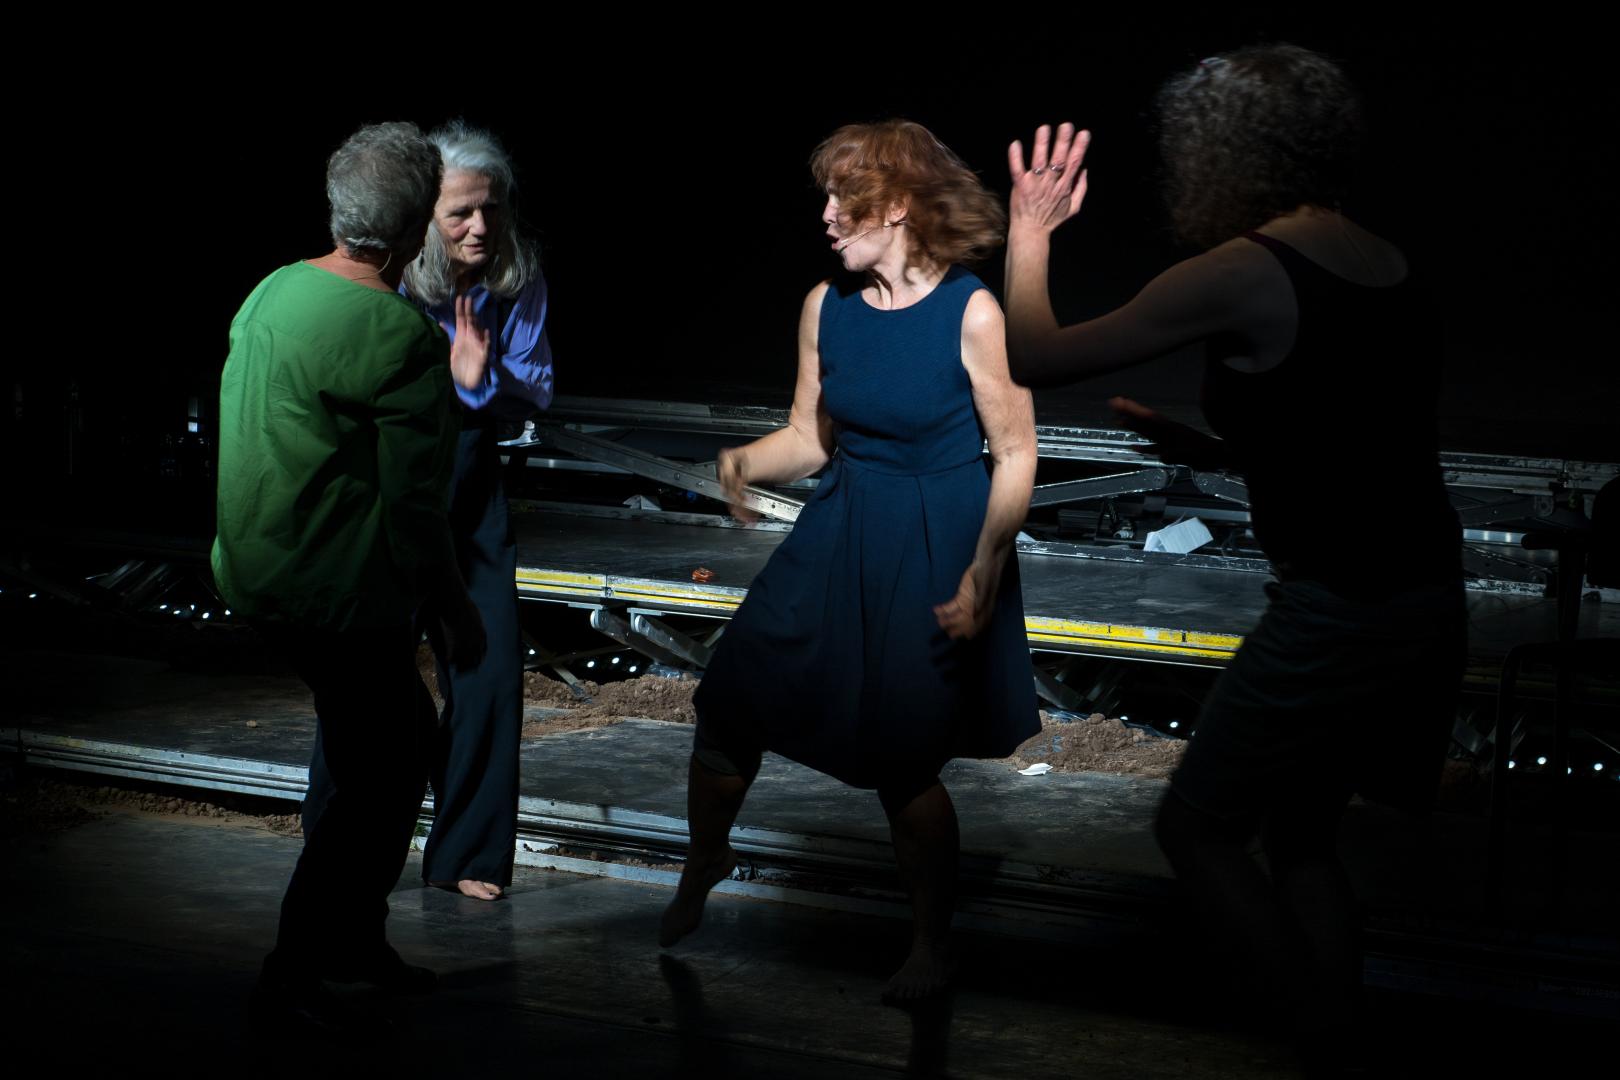 Vier Frauen stehen gestikulierend und mit kleinen Tanzbewegungen auf einer Bühne.